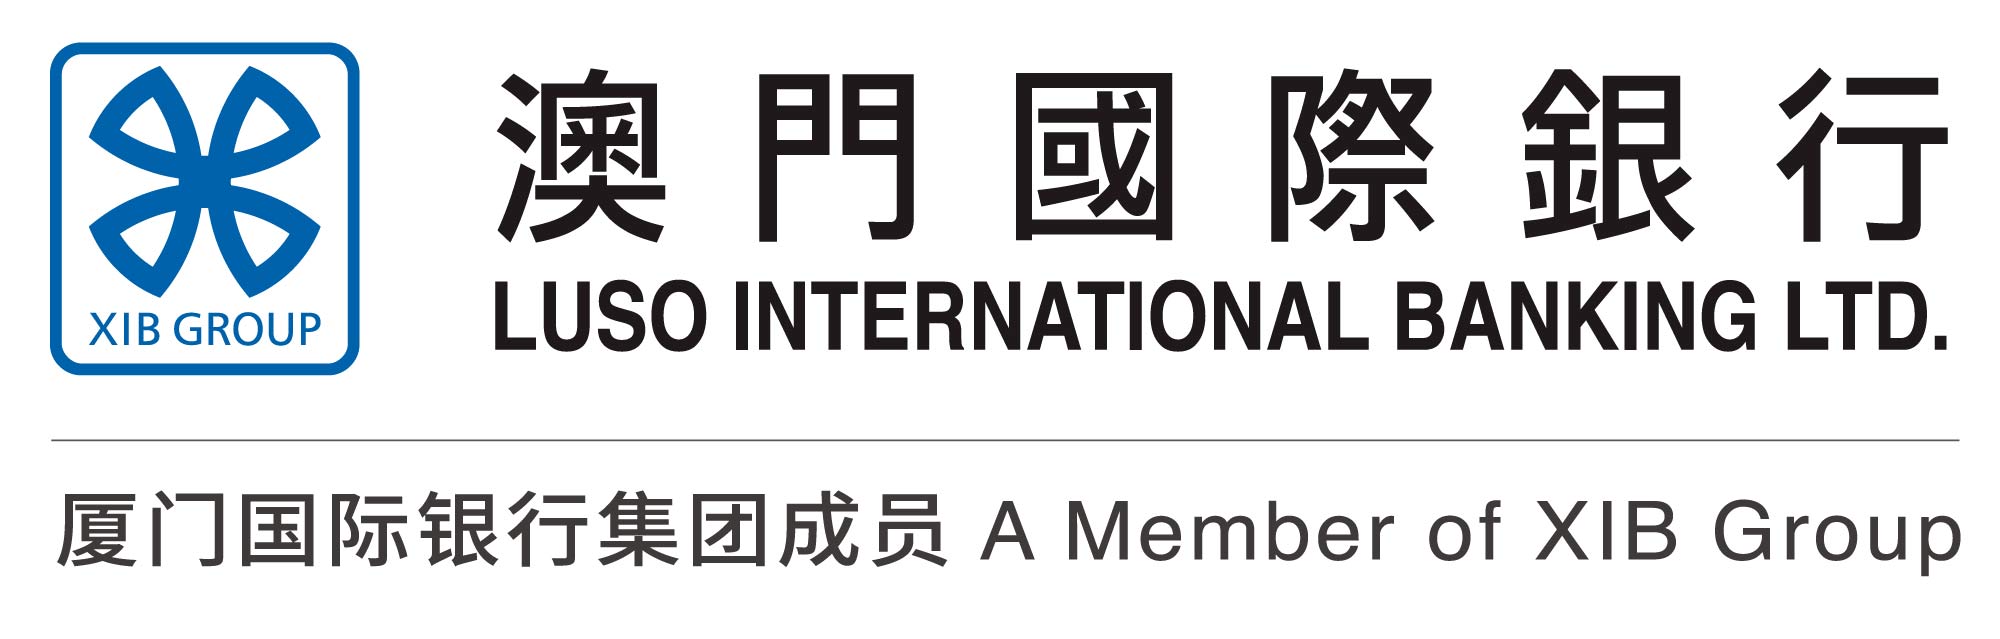 澳門國際銀行 Logo